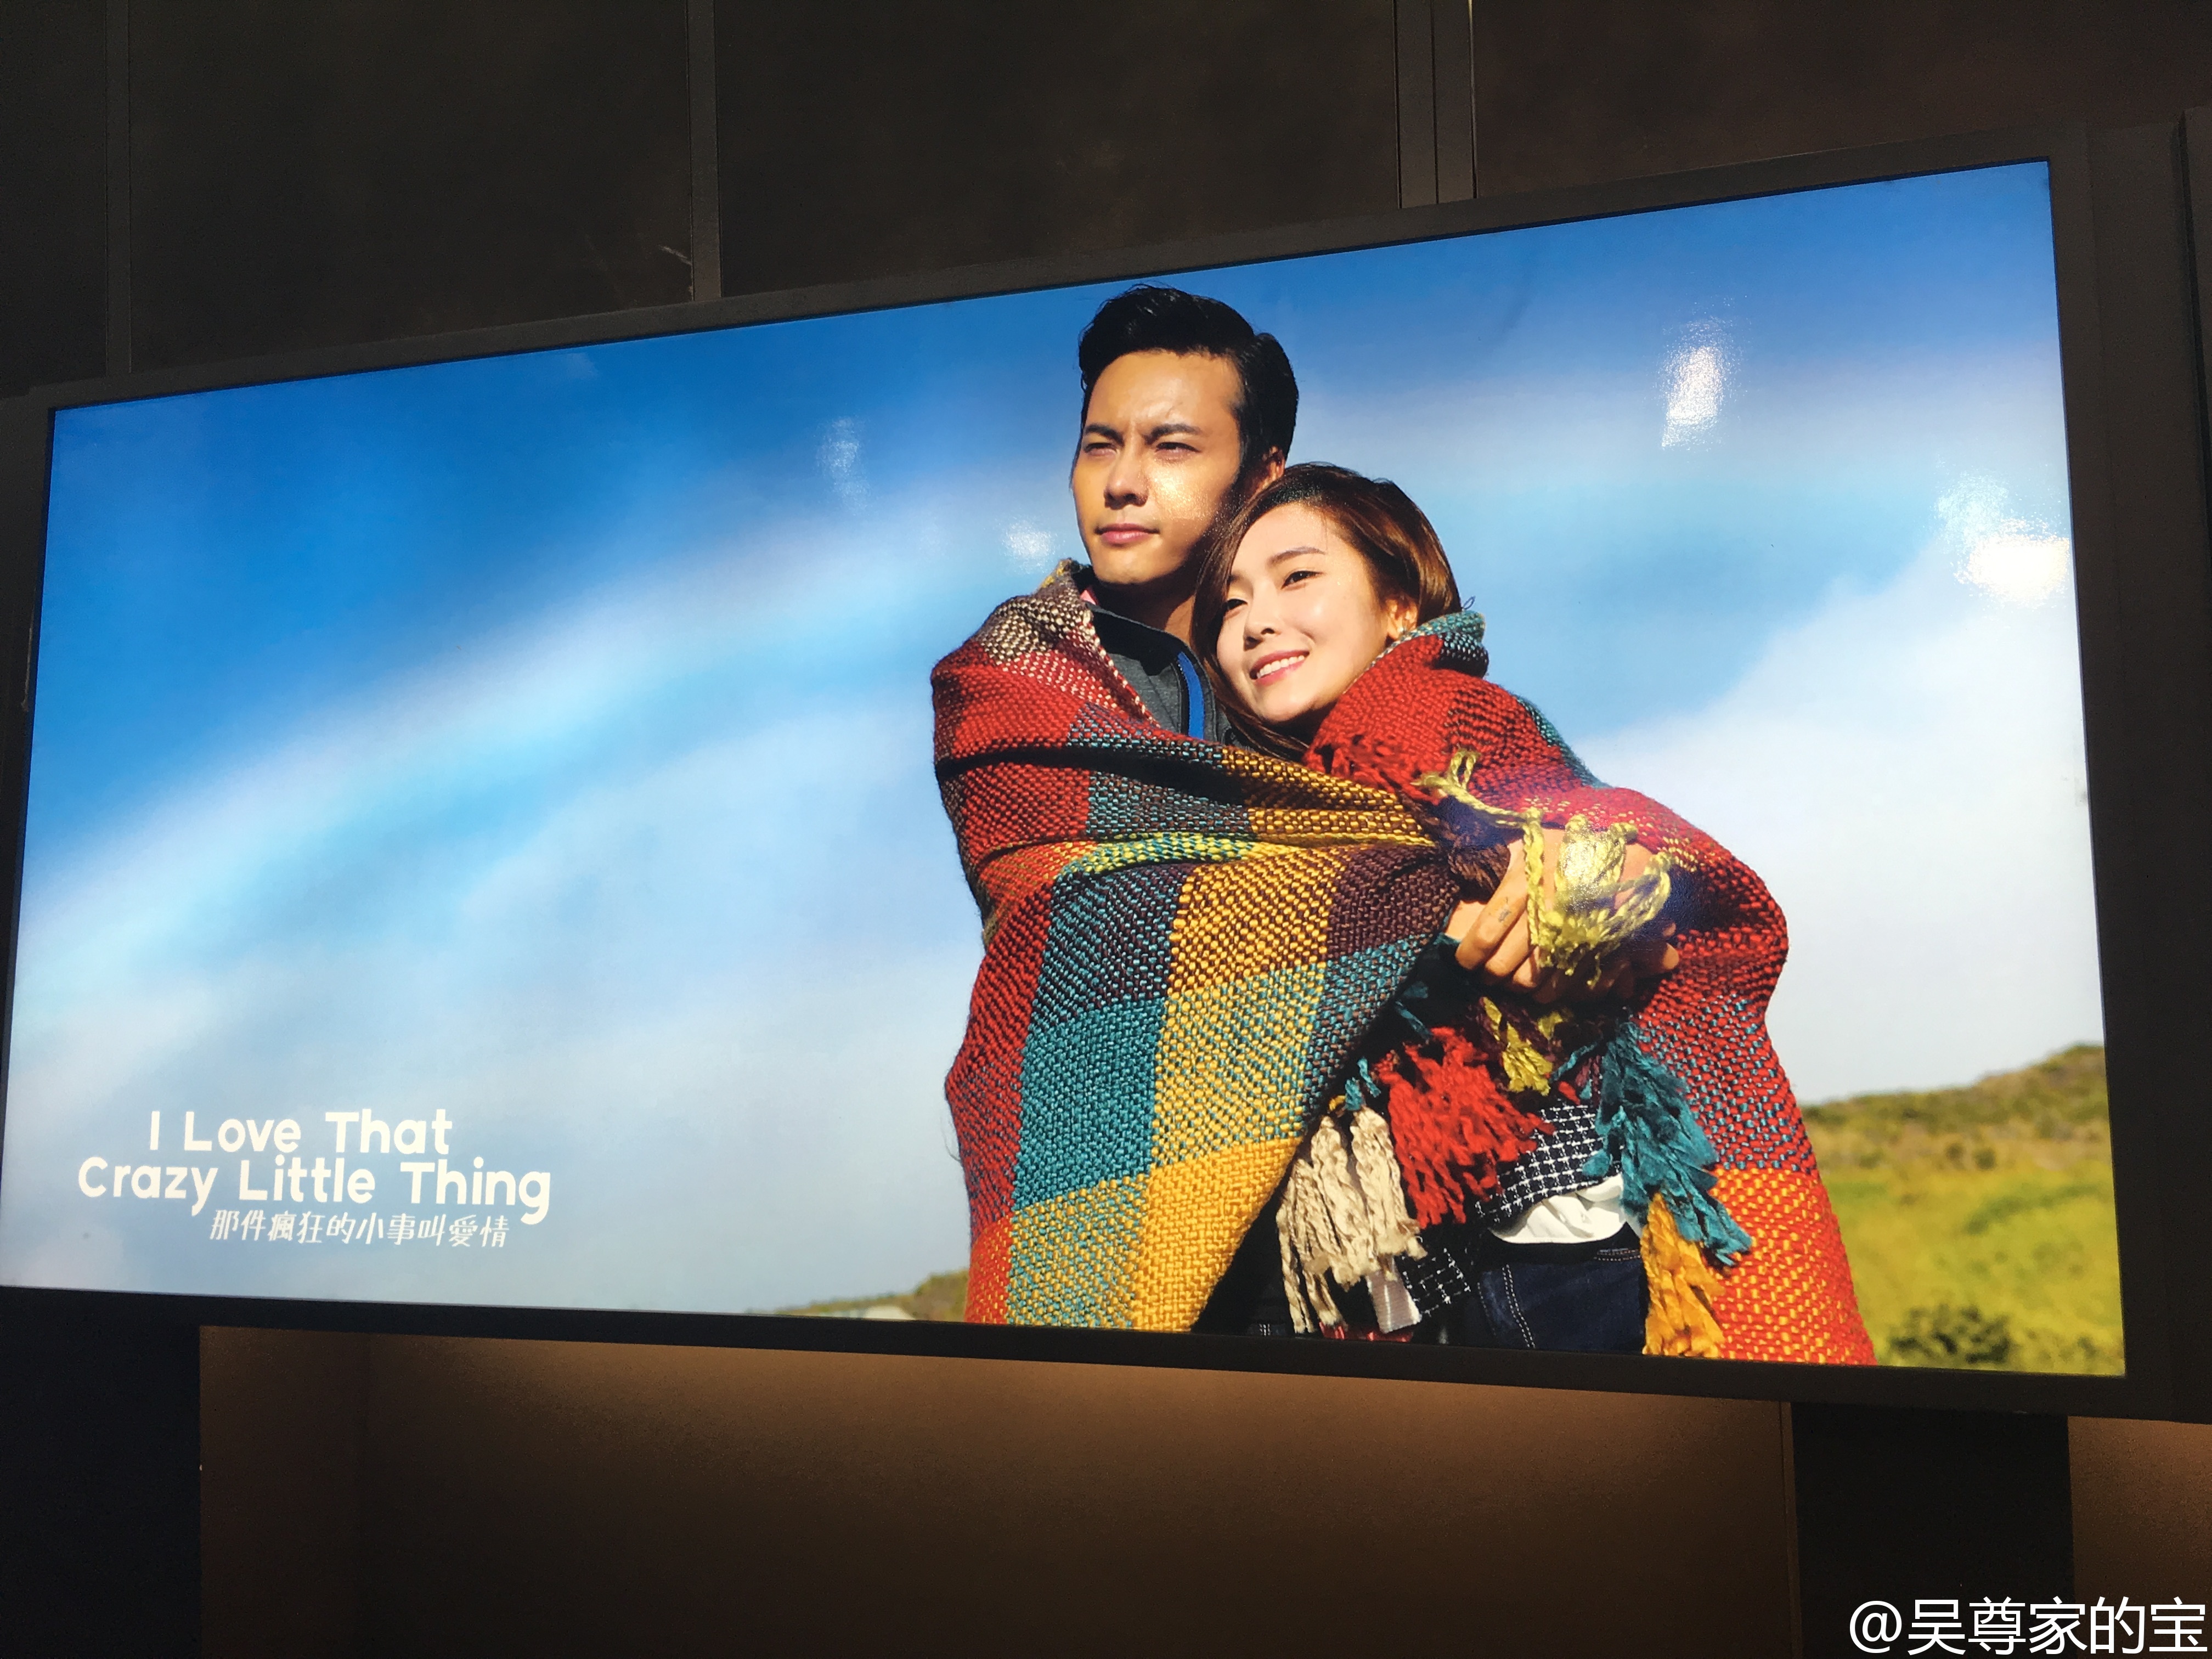 [OTHER][20-10-2015]Jessica sẽ góp mặt trong bộ phim điện ảnh của Trung Quốc -  "I Love That Crazy Little Thing"  644e48begw1f1w61g9knyj23402c0e82